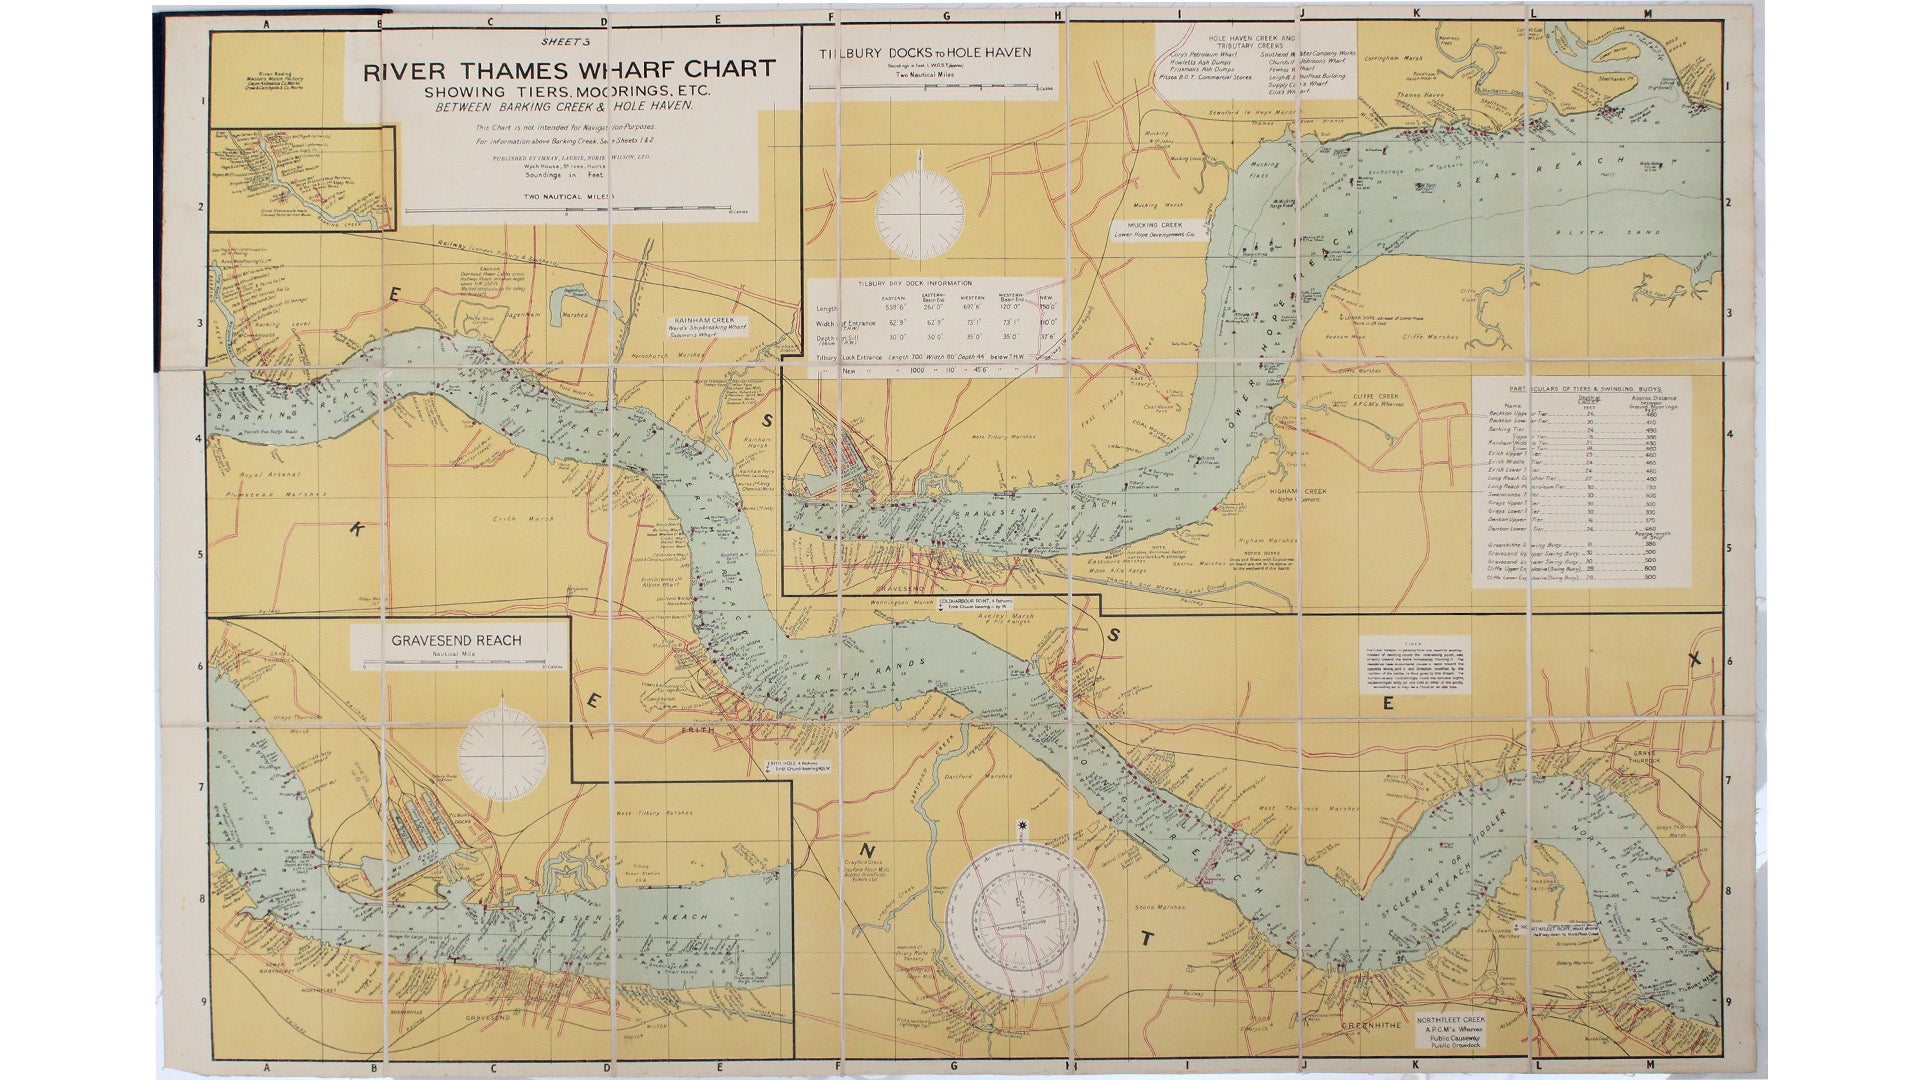 River Thames Wharf Chart